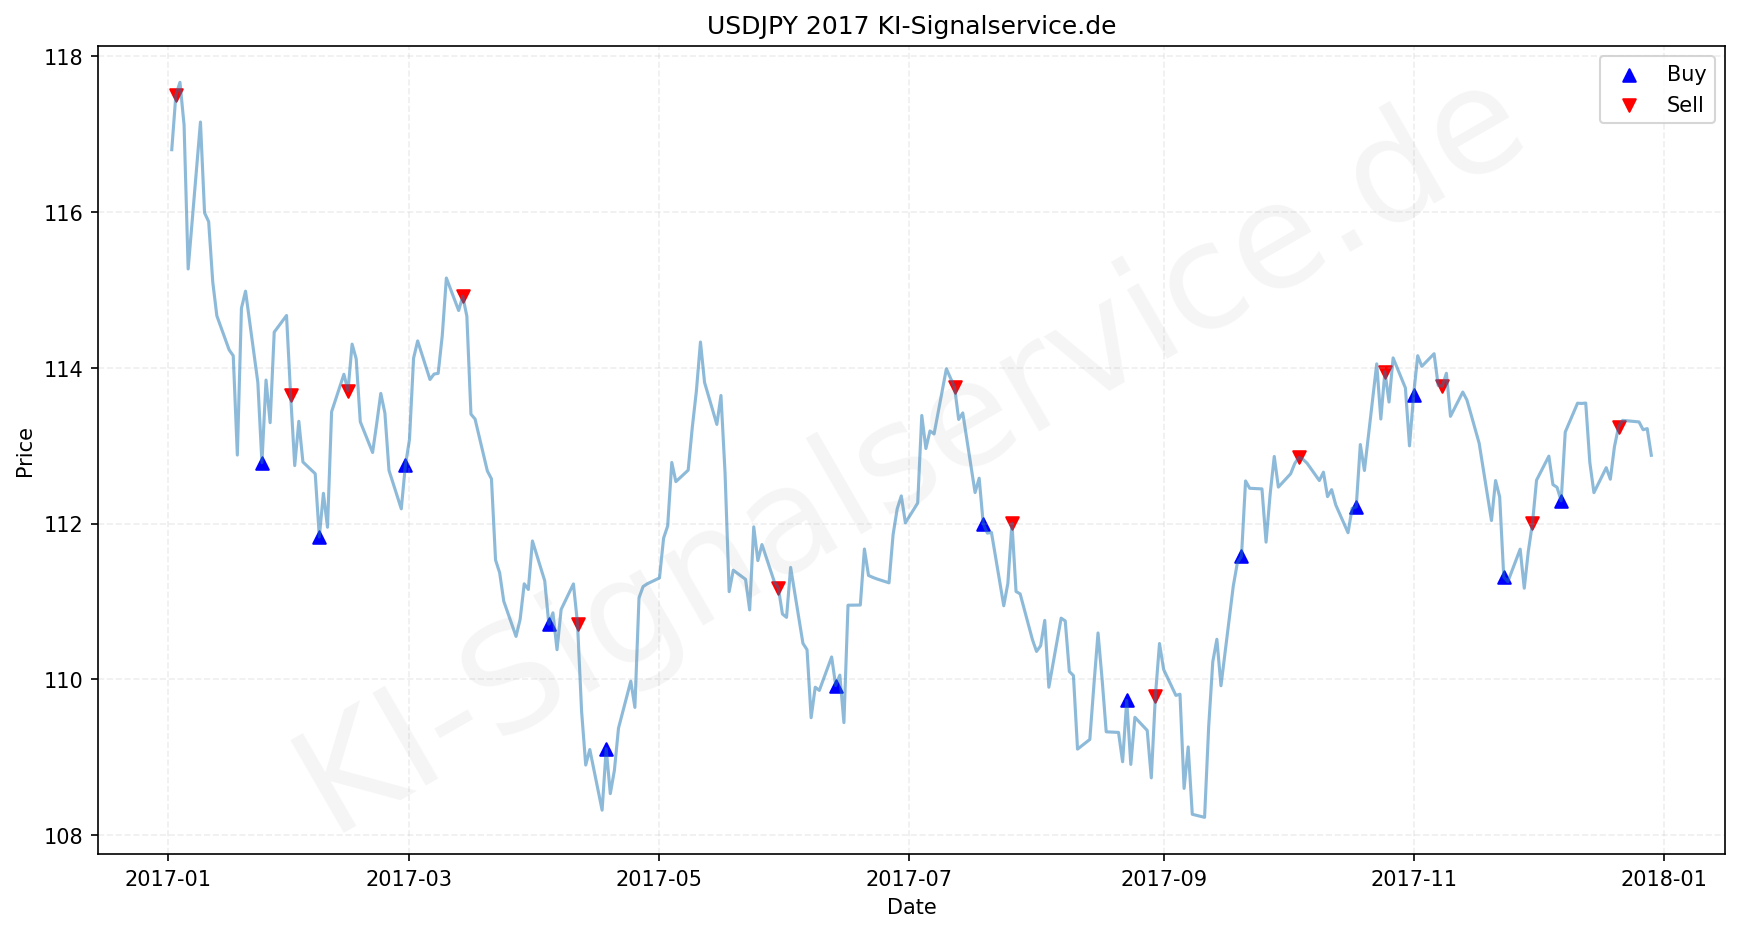 USDJPY Chart - KI Tradingsignale 2017